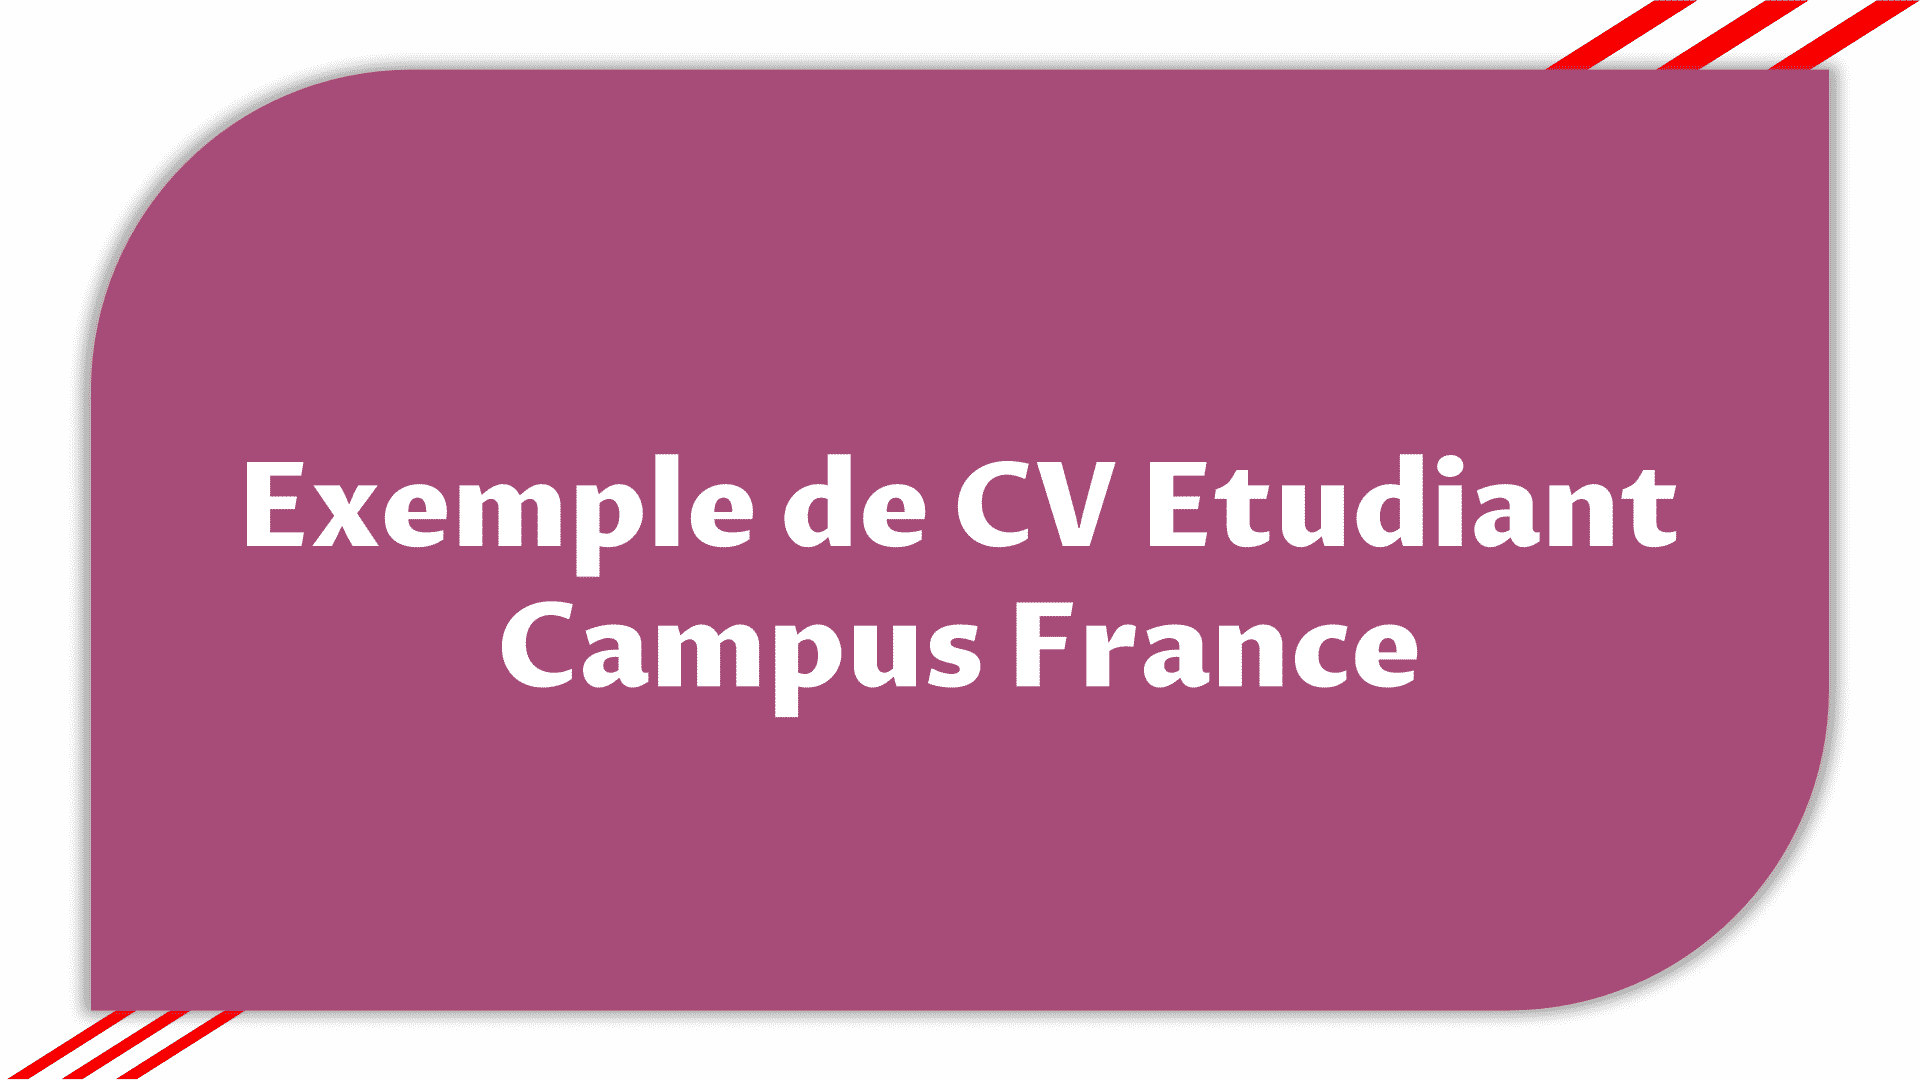 Exemple de CV Etudiant Campus France > Etudier en France